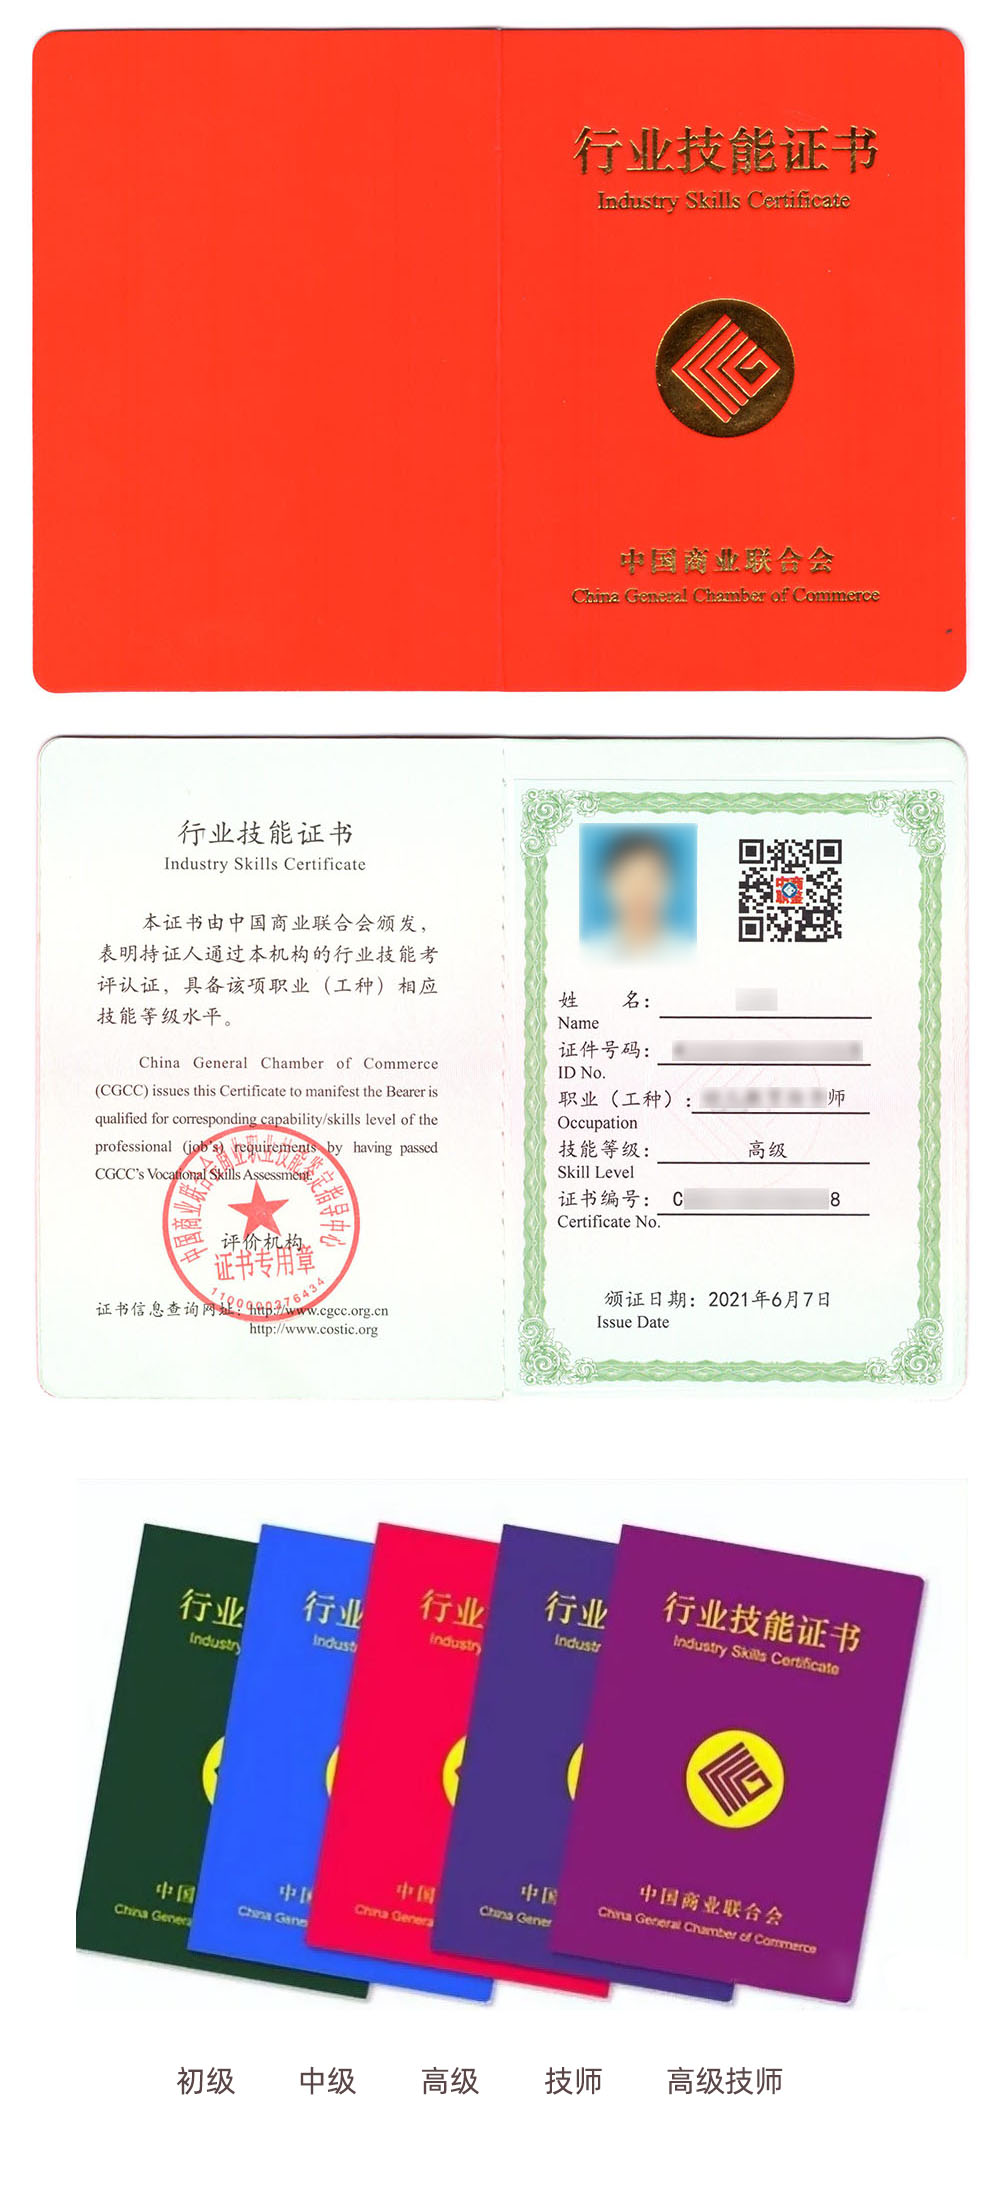 中国商业联合会商业职业技能鉴定指导中心 行业技能证书 创业指导师证证书样本